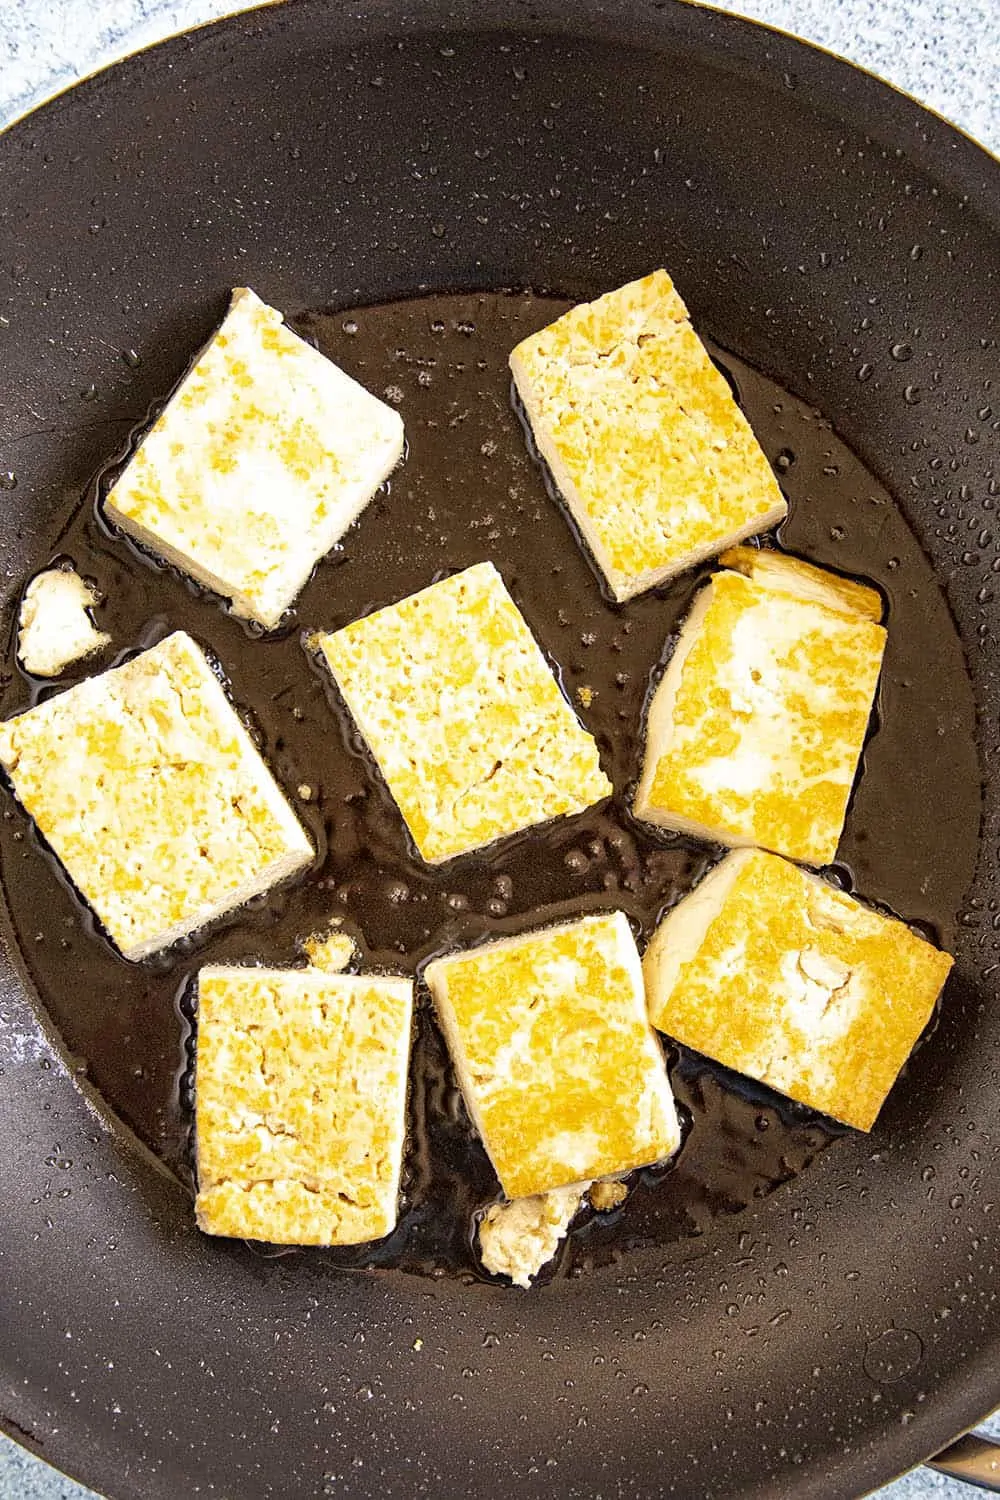 Frying blocks of tofu for making sofritas